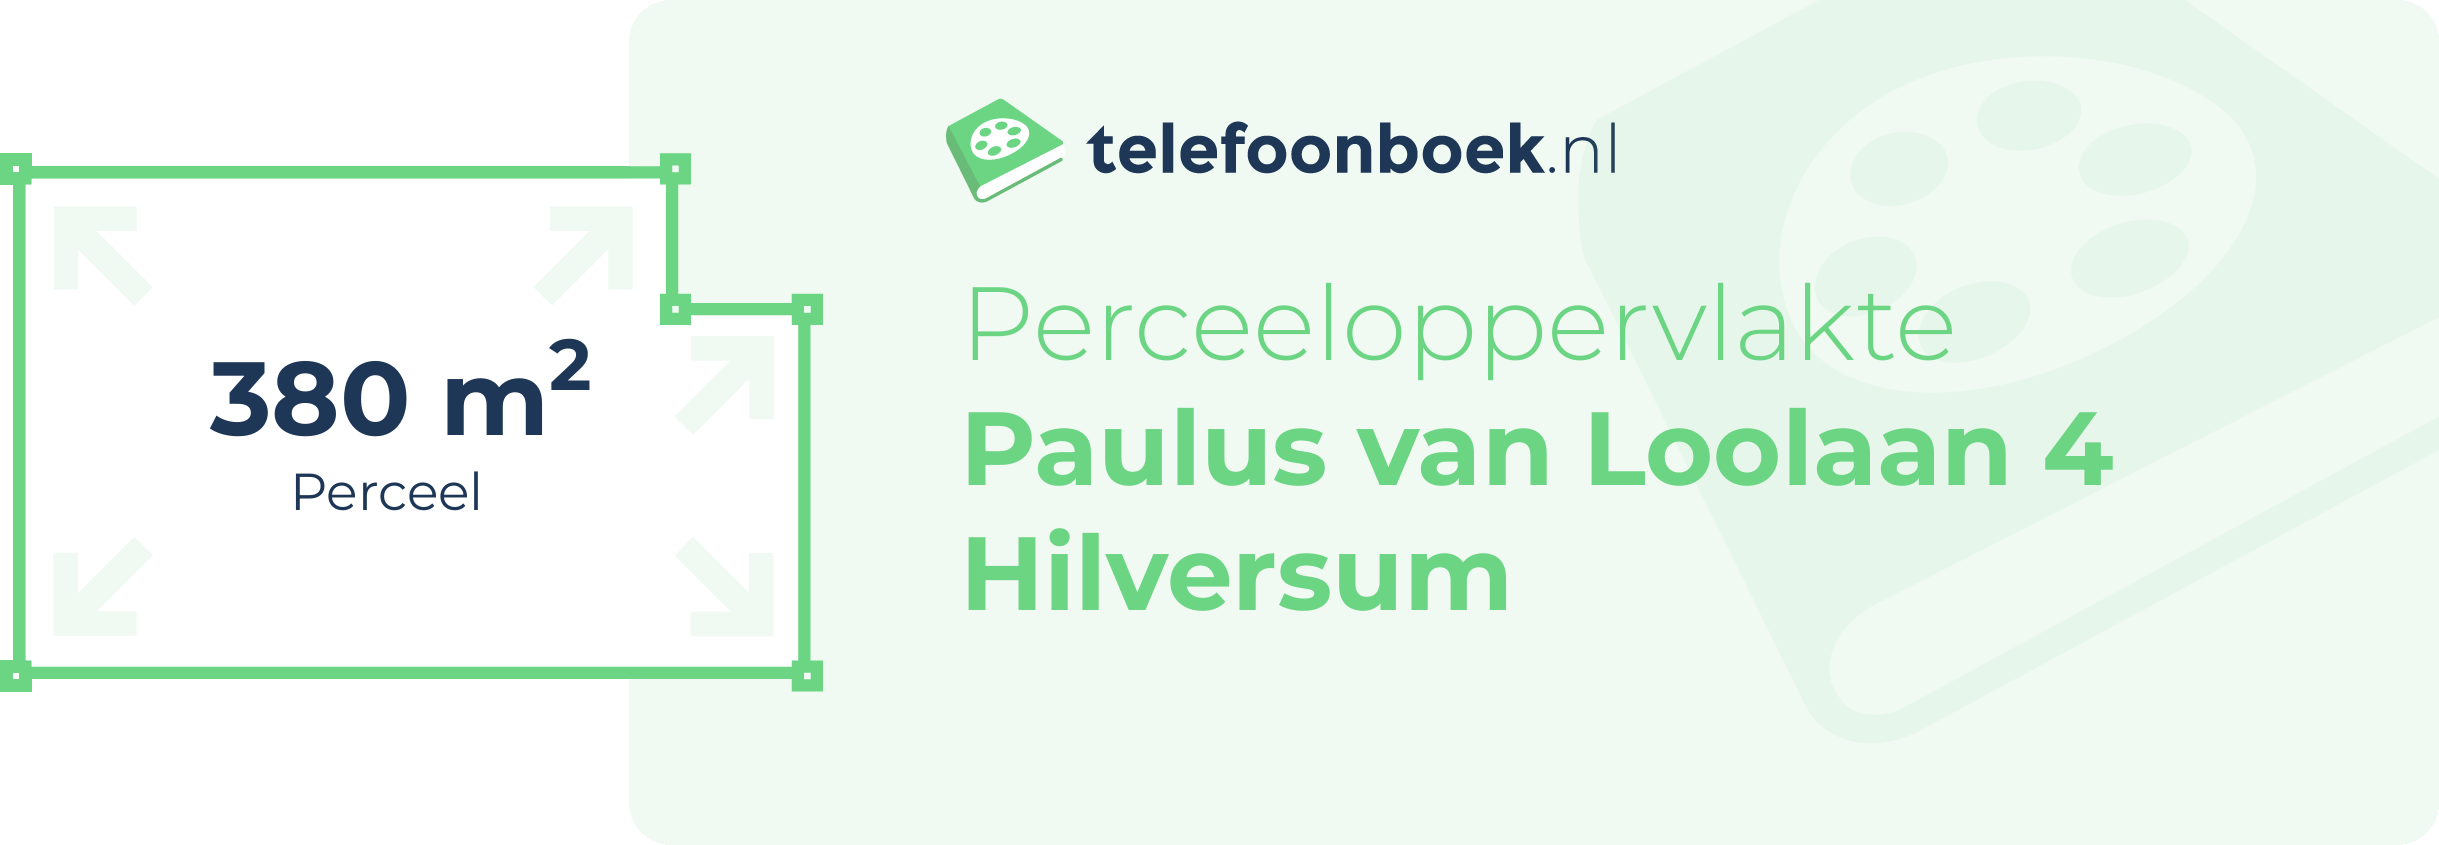 Perceeloppervlakte Paulus Van Loolaan 4 Hilversum